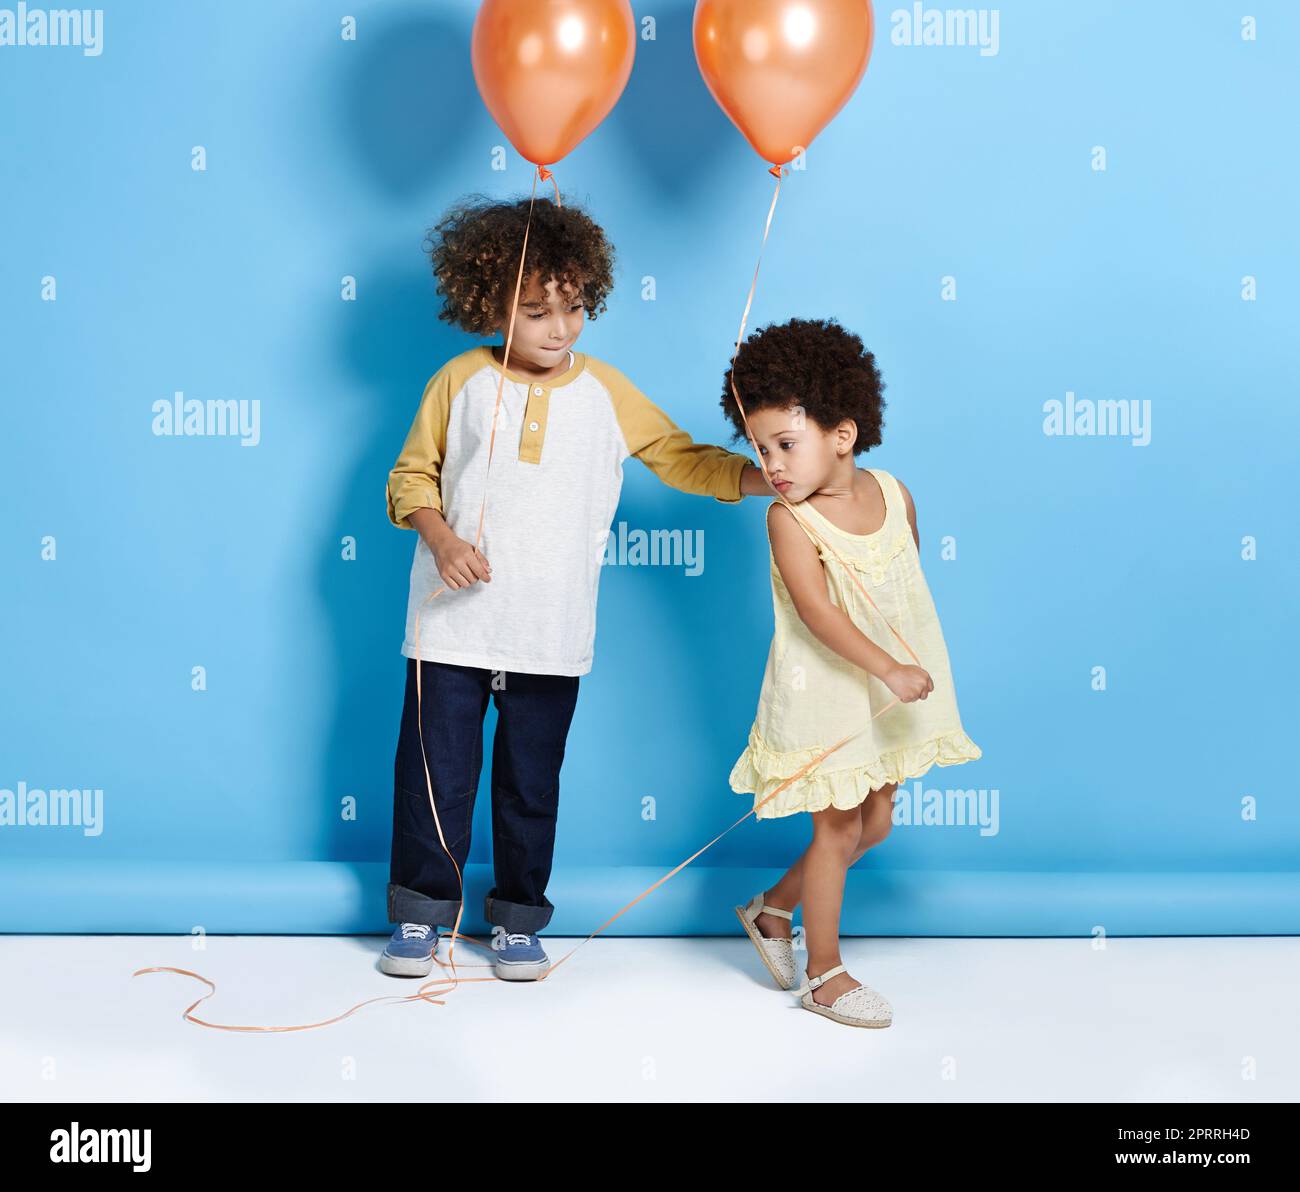 Ein kleines Mädchen und ein Junge halten einen Ballon über einem blauen Hintergrund. Stockfoto